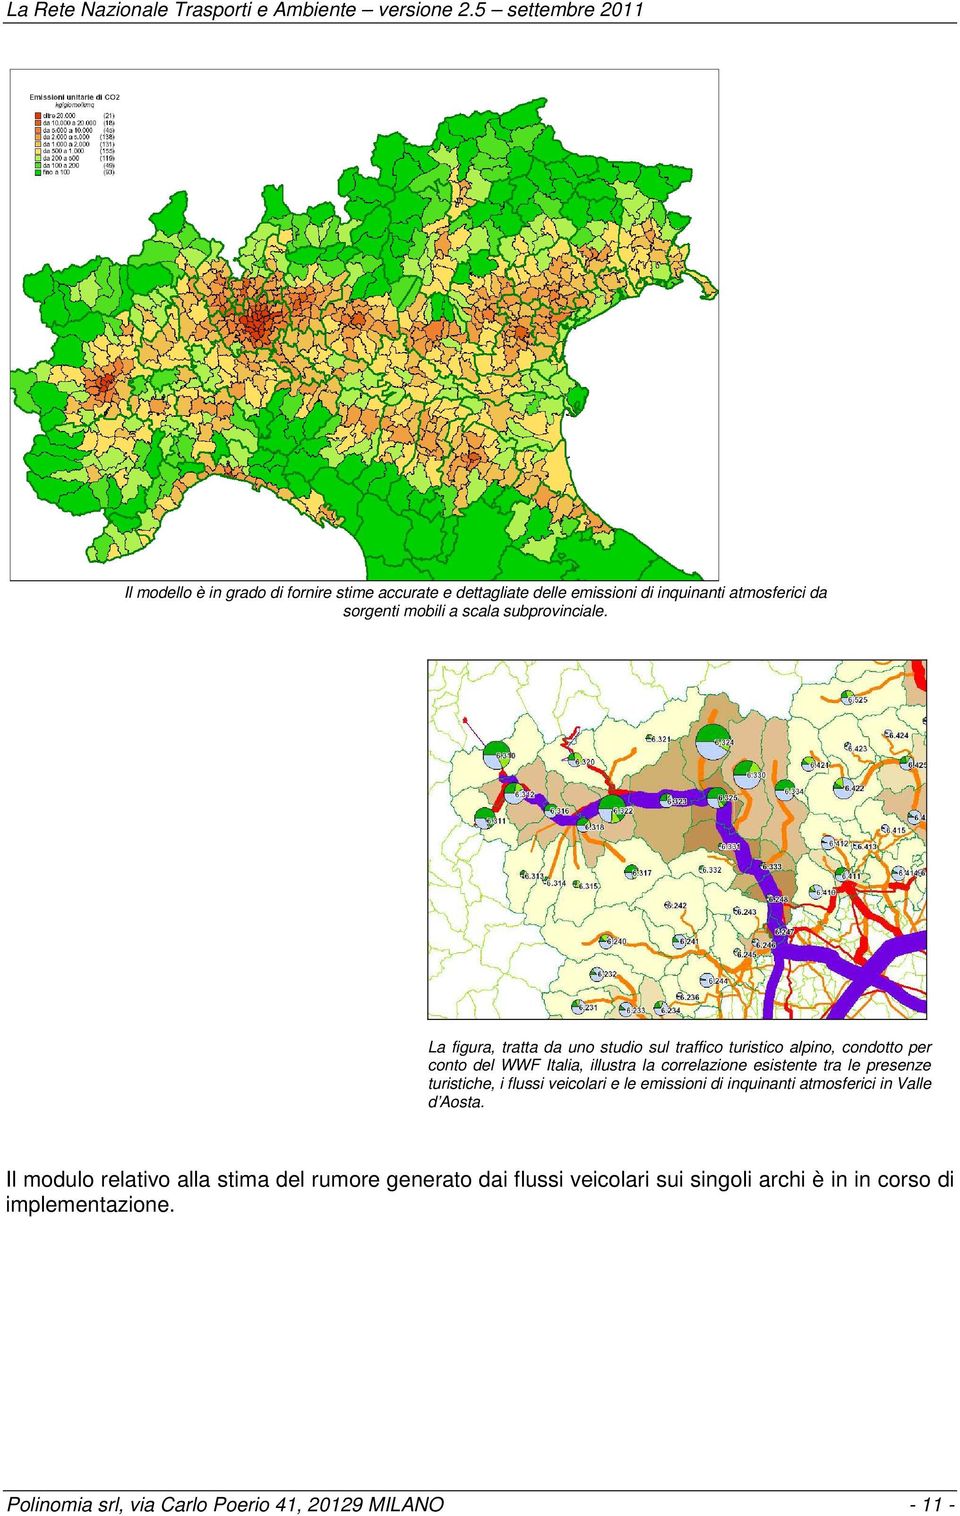 La figura, tratta da uno studio sul traffico turistico alpino, condotto per conto del WWF Italia, illustra la correlazione esistente tra le